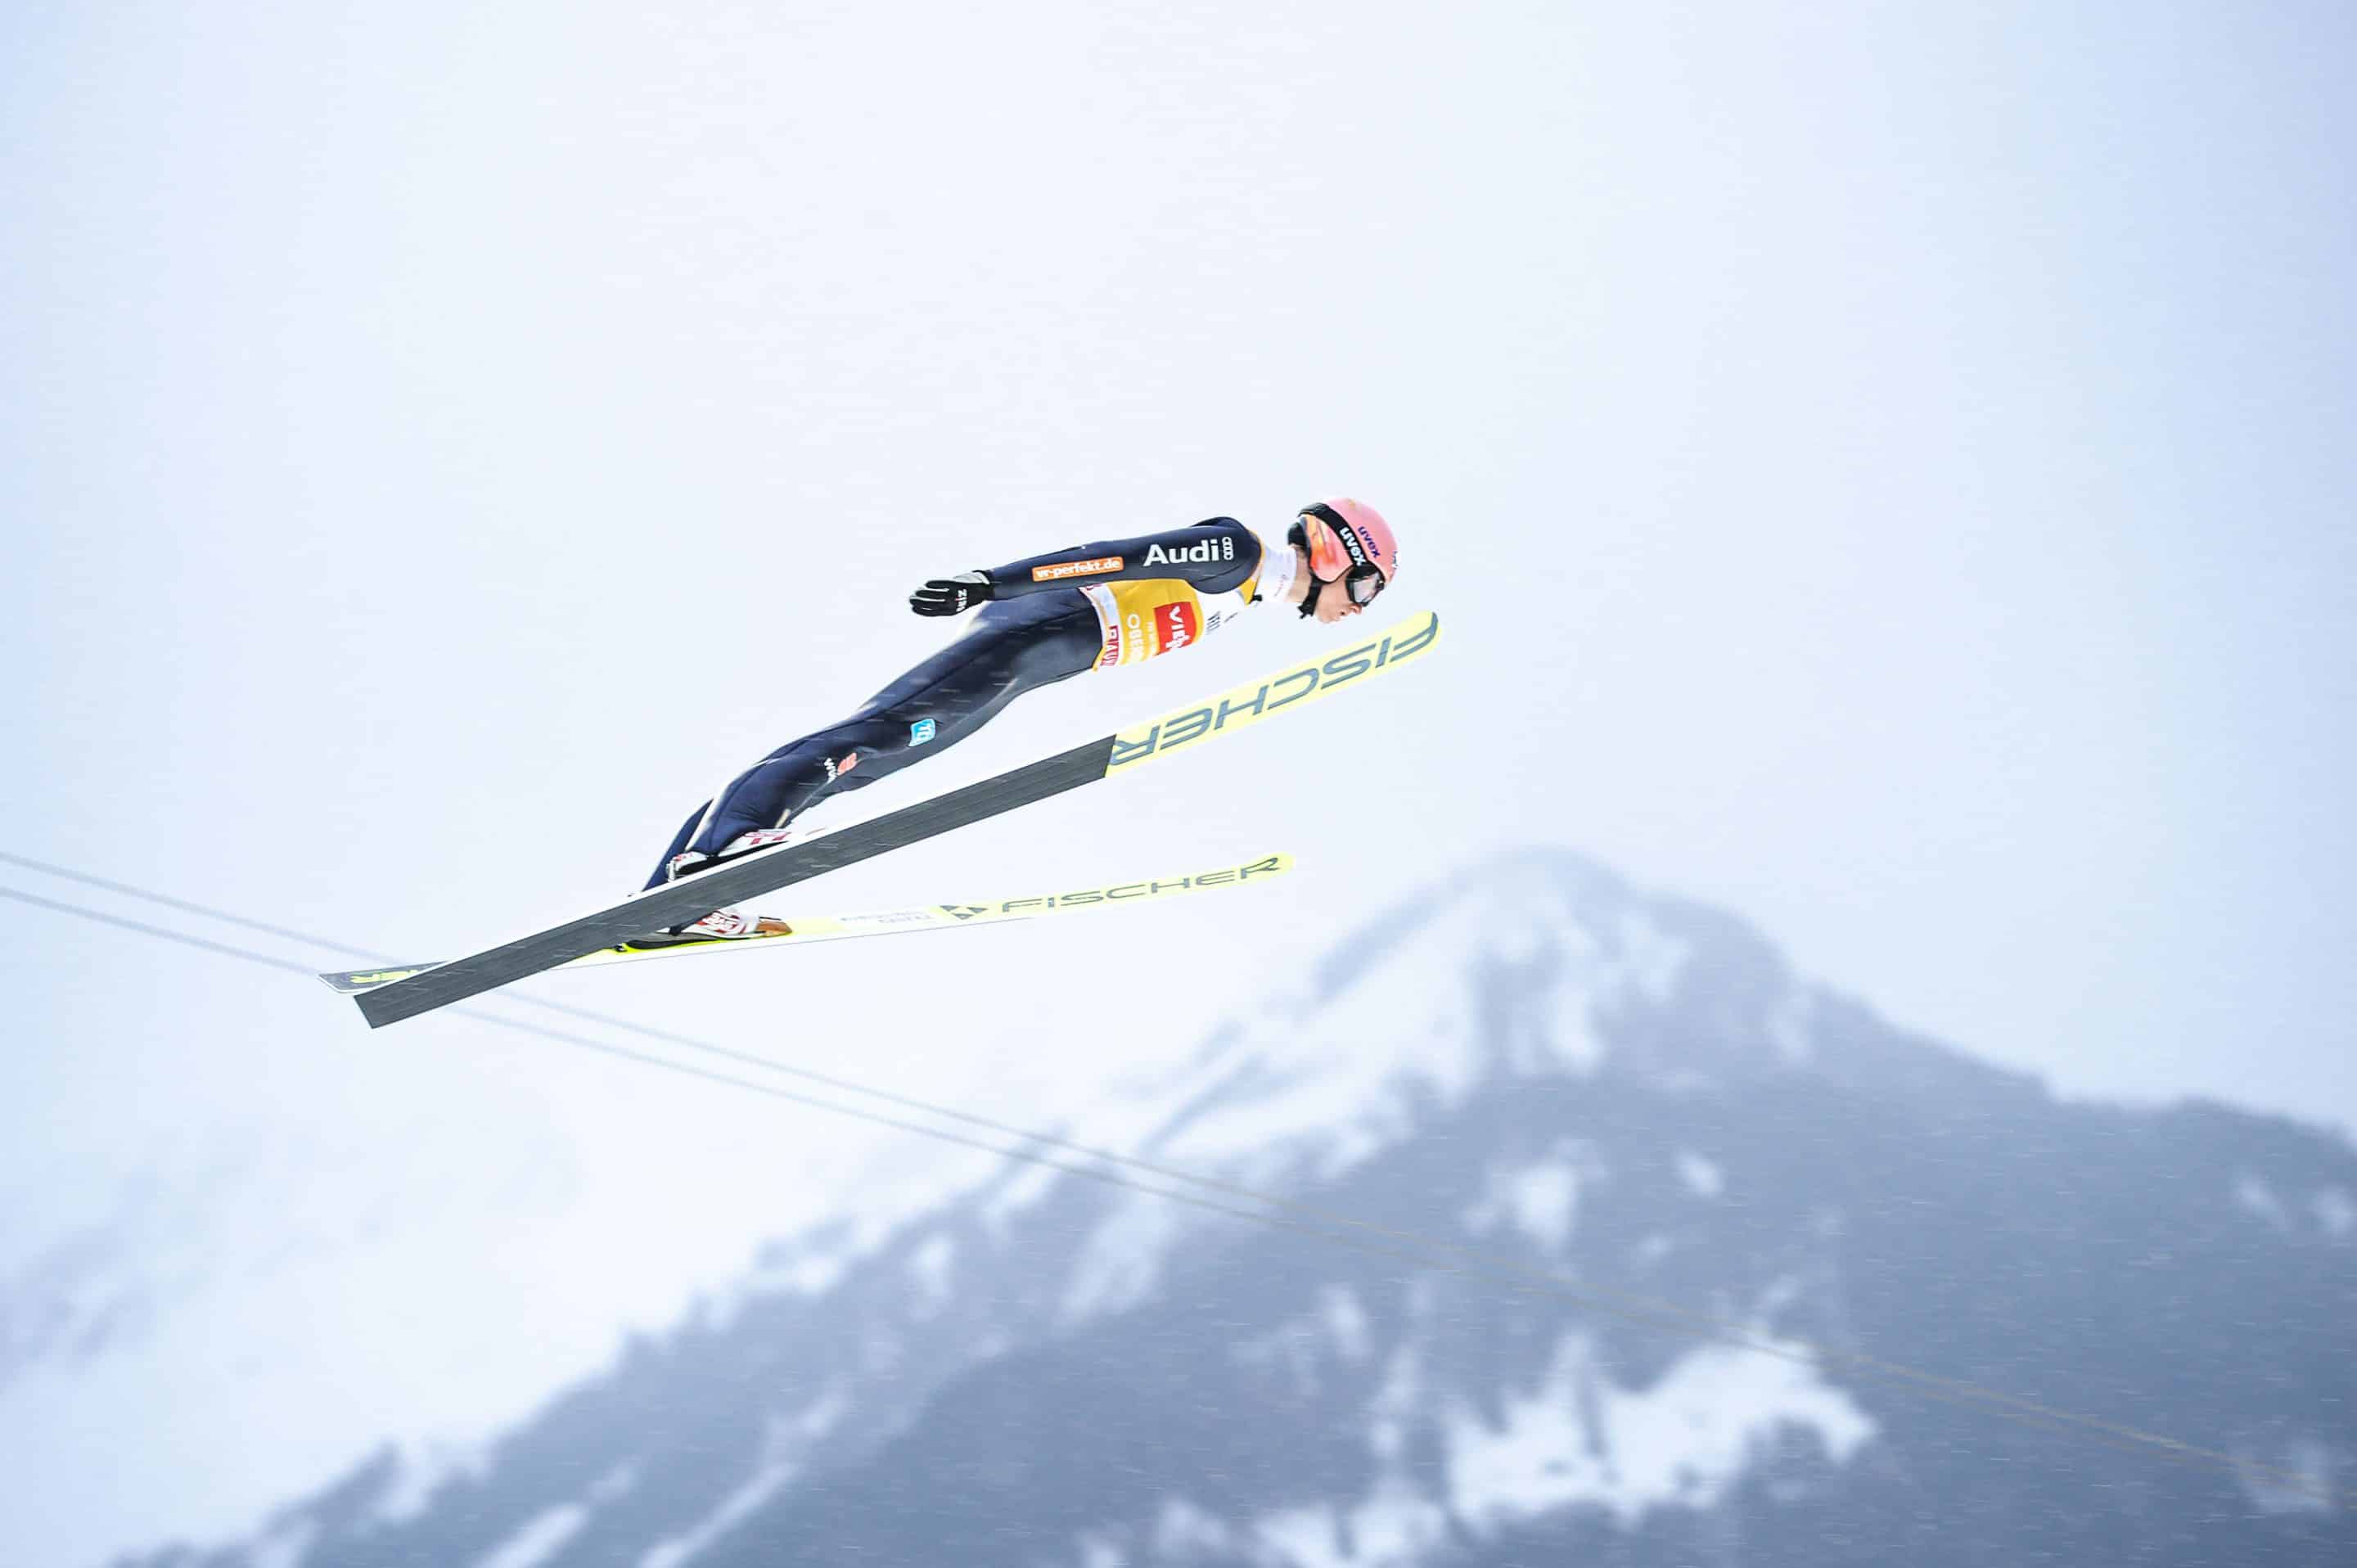 Karl Geiger vom Skiclub Oberstdorf beim Auftaktspringen der Vierschanzentournee. Foto: Dominik Berchtold/Vierschanzentournee